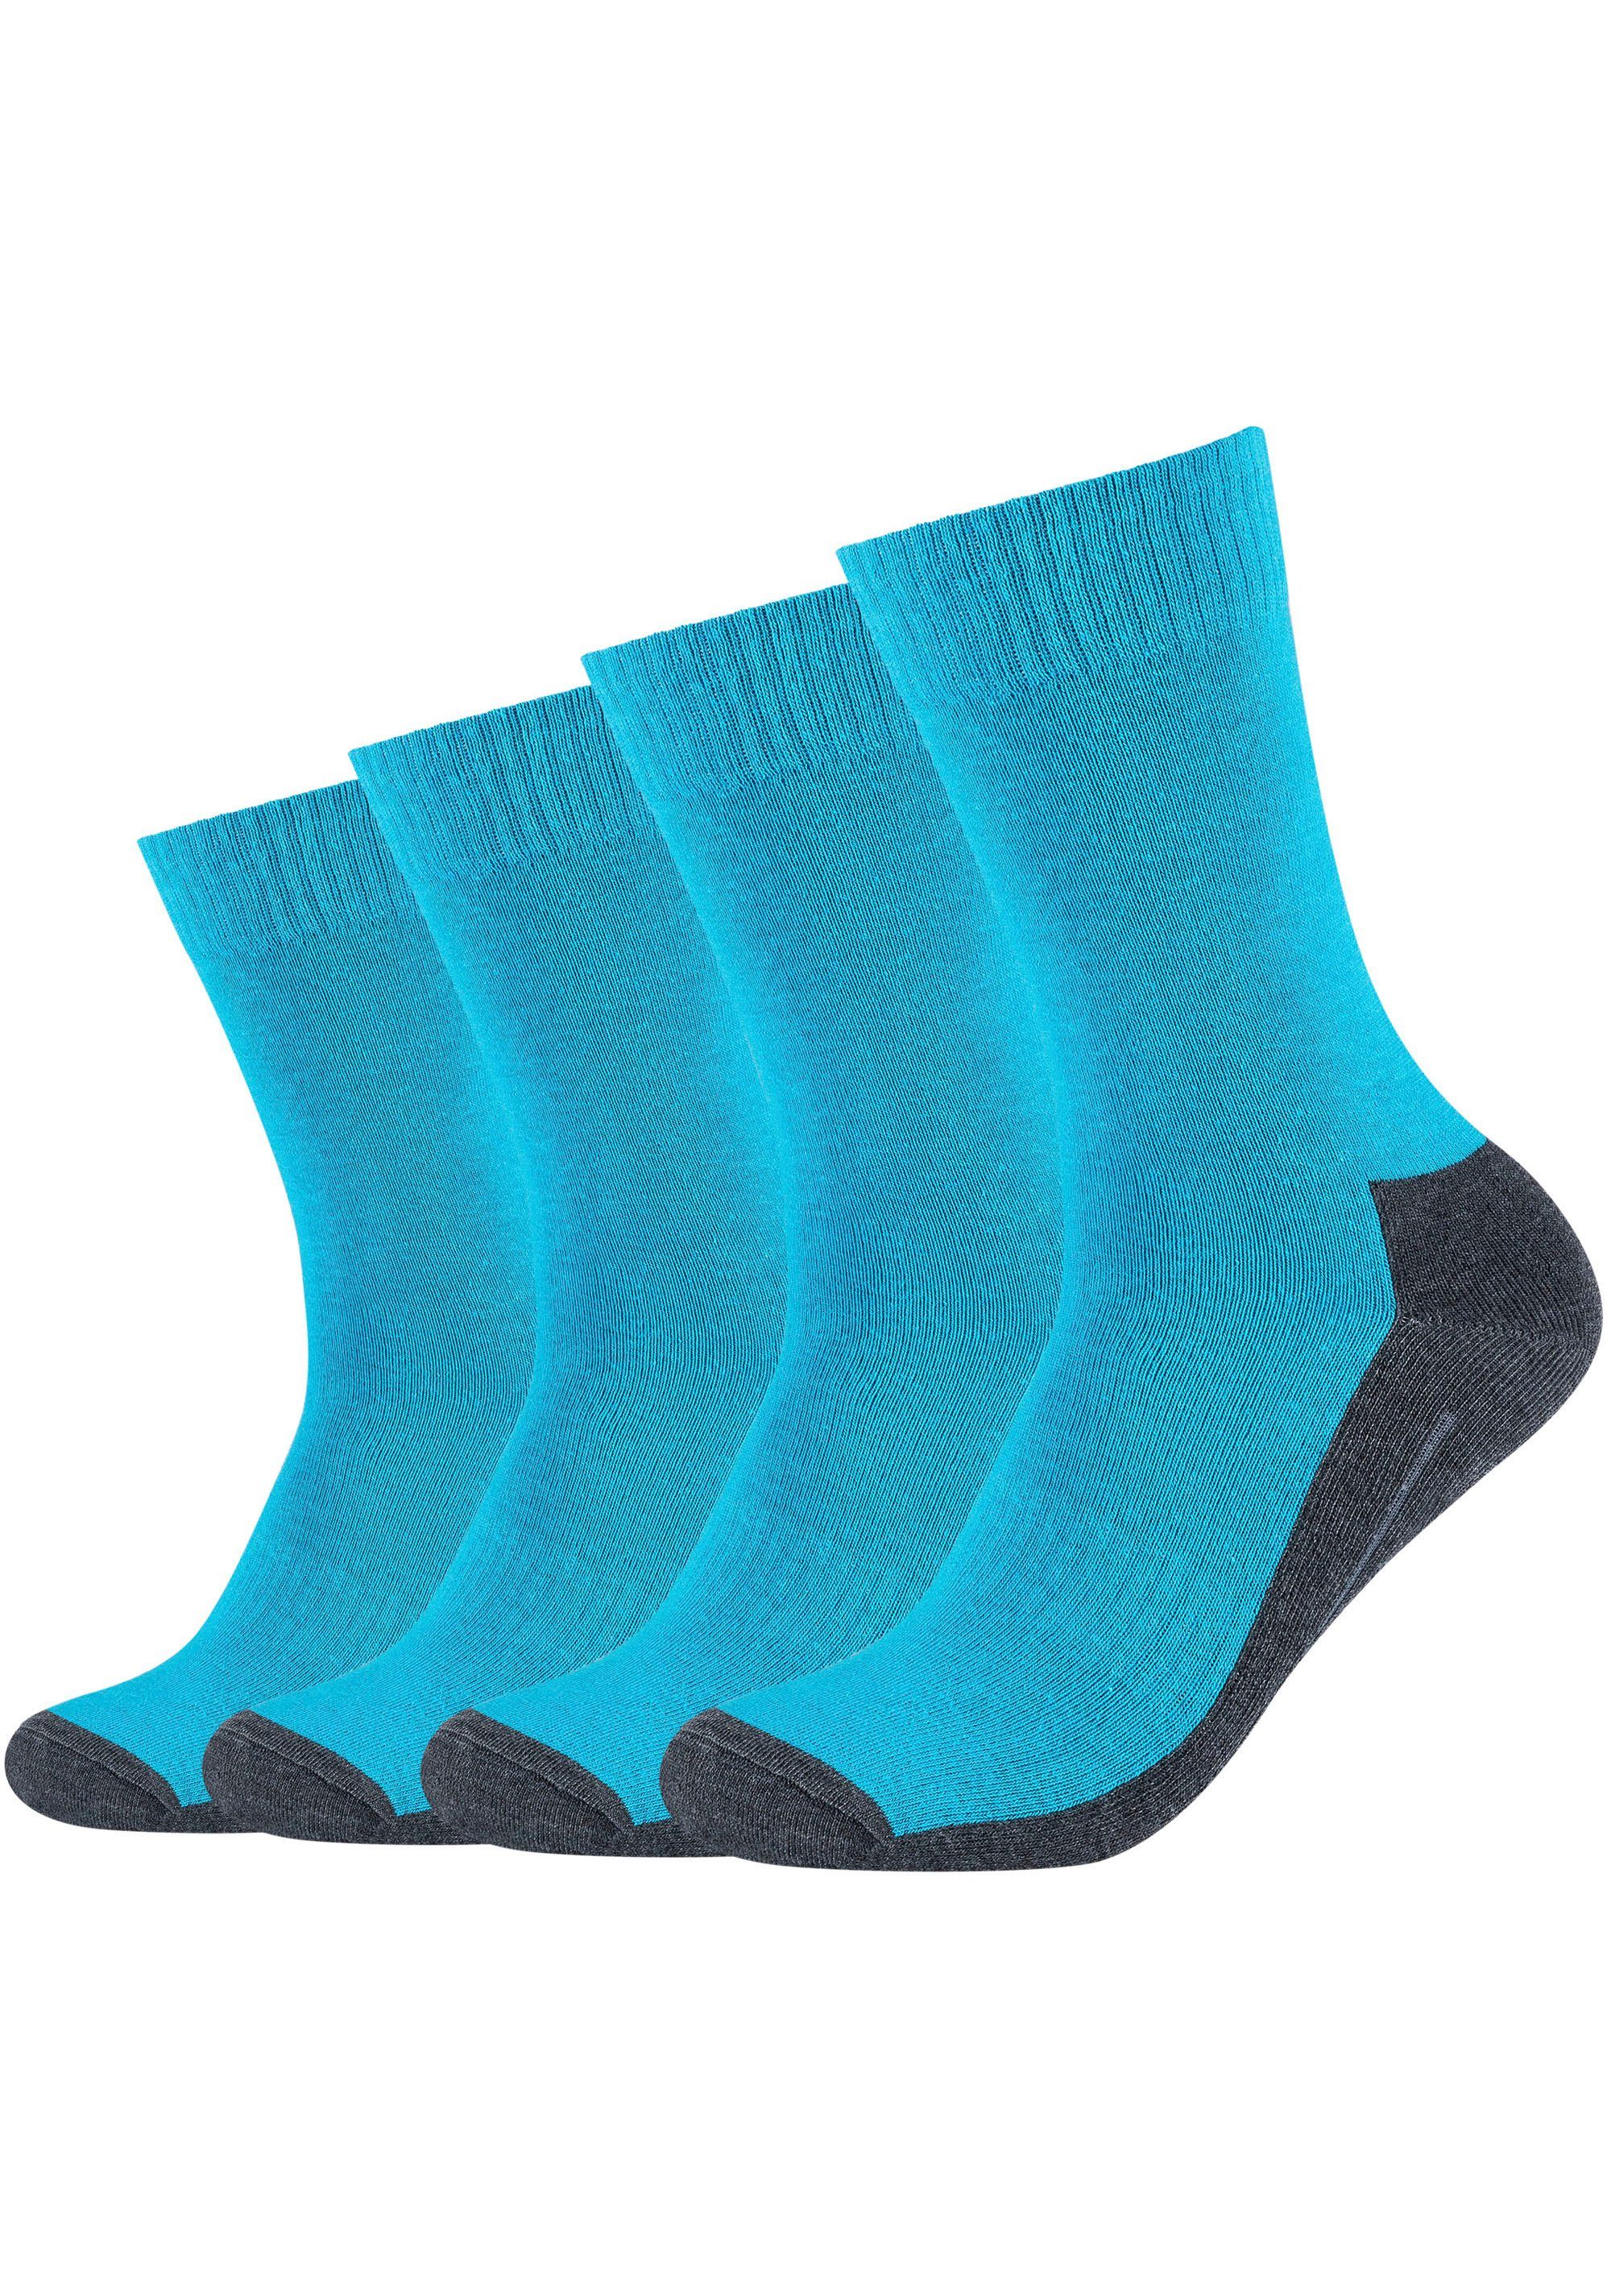 Camano Sportsocken (Packung, 4-Paar) Pro-Tex-Funktion: Klima- und feuchtigkeitsregulierend turquoise-grey | Lange Socken